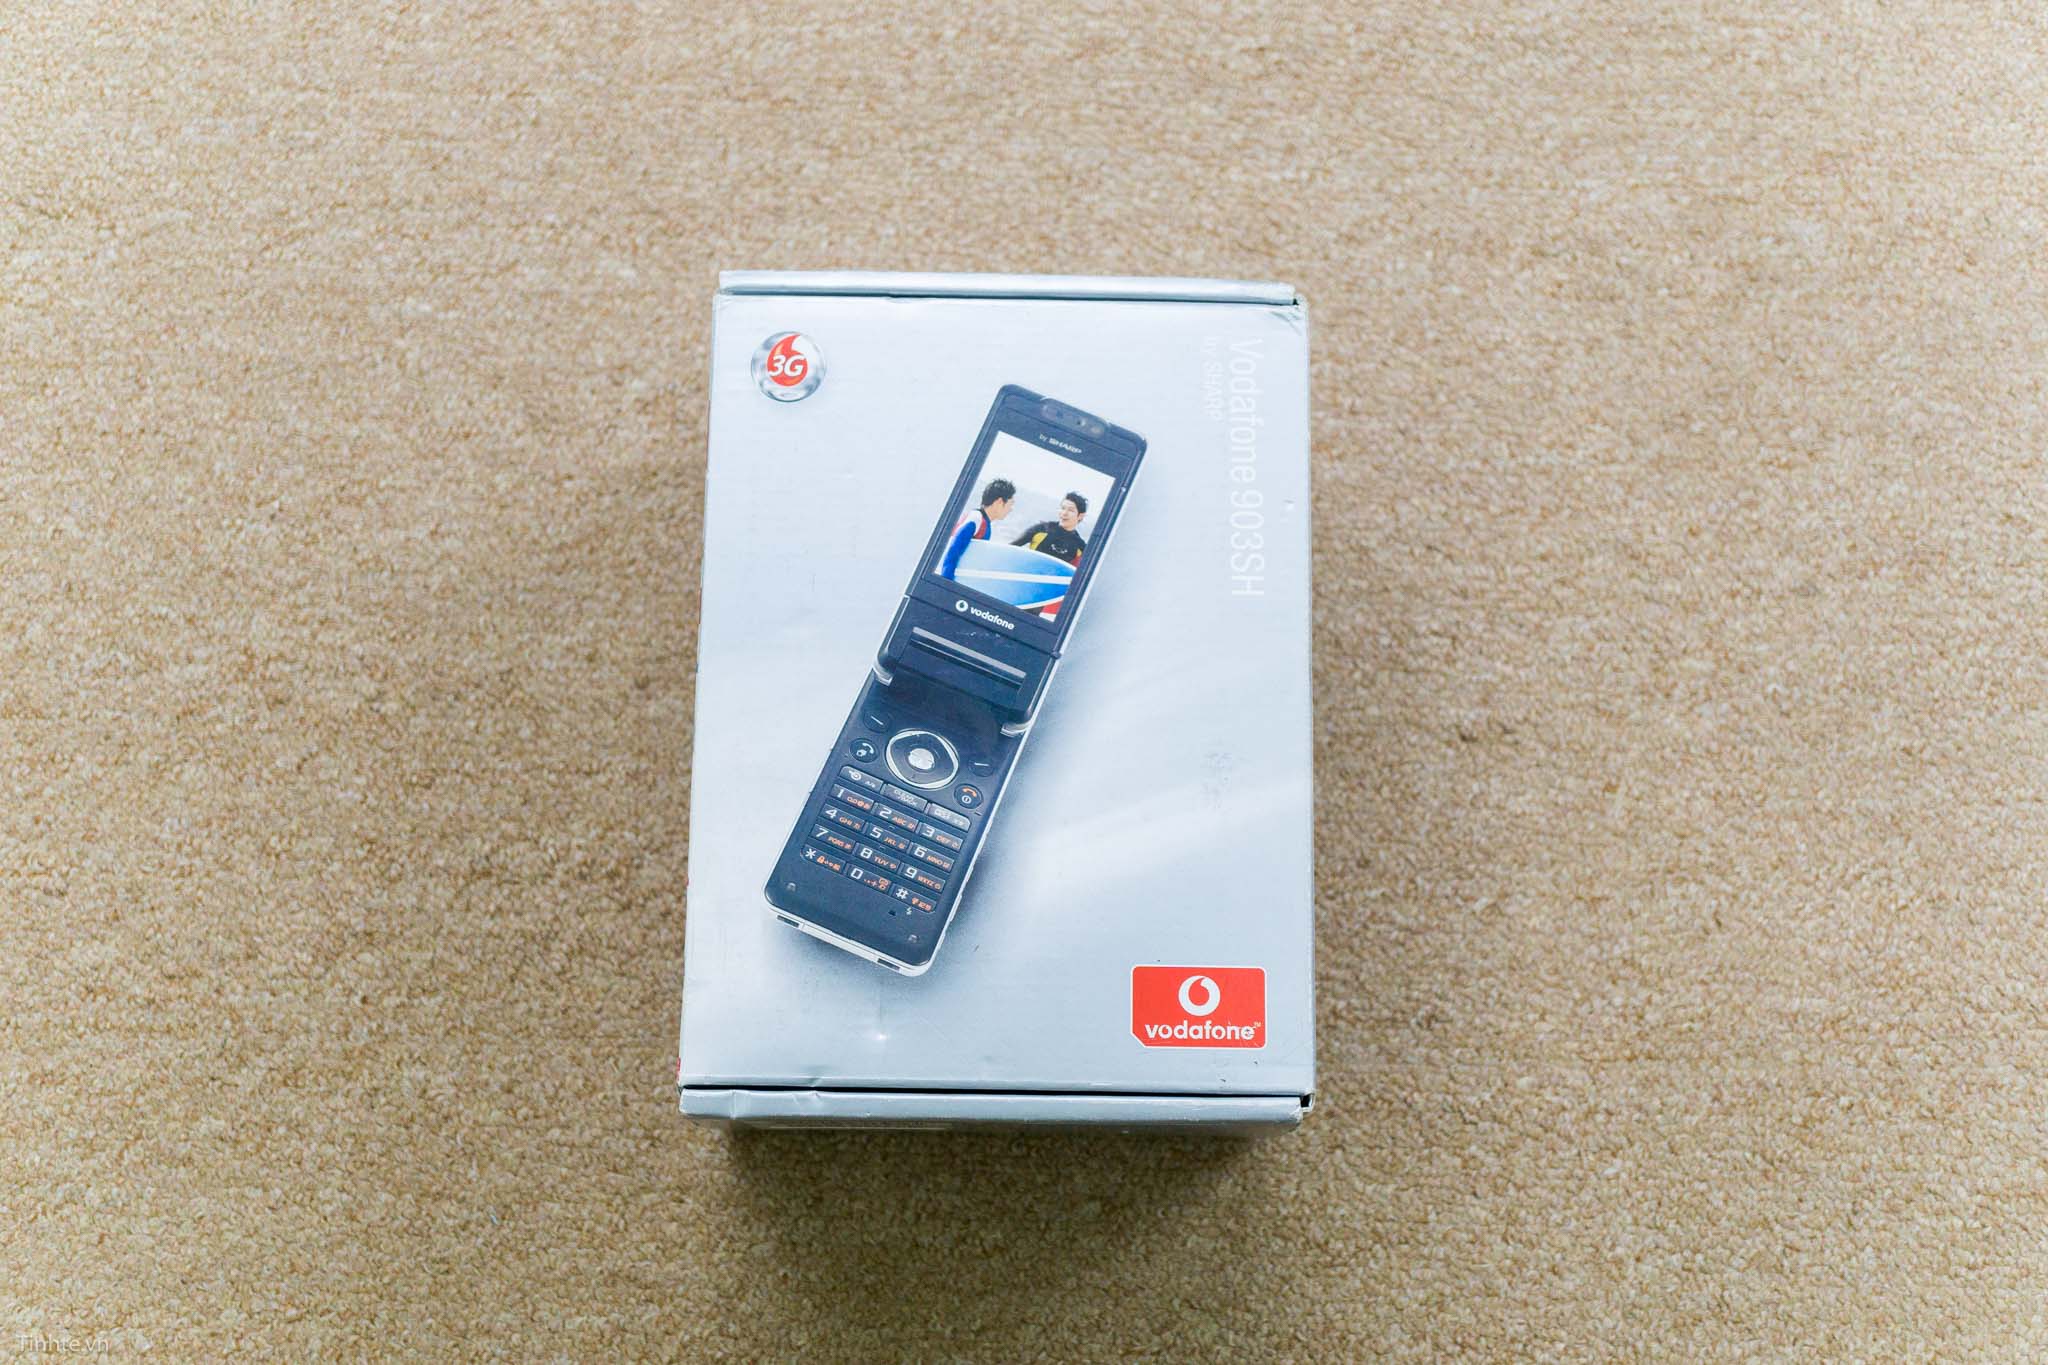 Sharp-903SH-Vodafone-tinhte-1.jpg